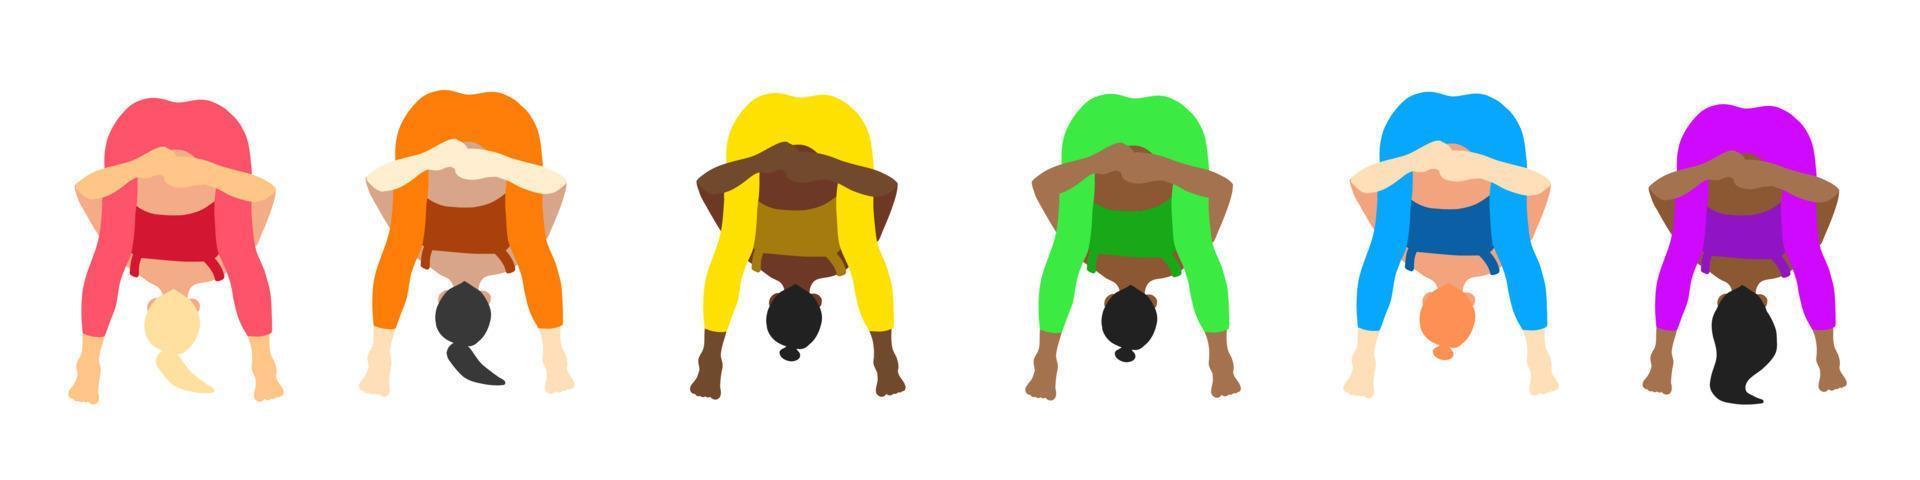 colección de posturas de yoga. europeo, africano, asiático. mujer mujer niña. ilustración vectorial en estilo plano de dibujos animados aislado sobre fondo blanco. vector